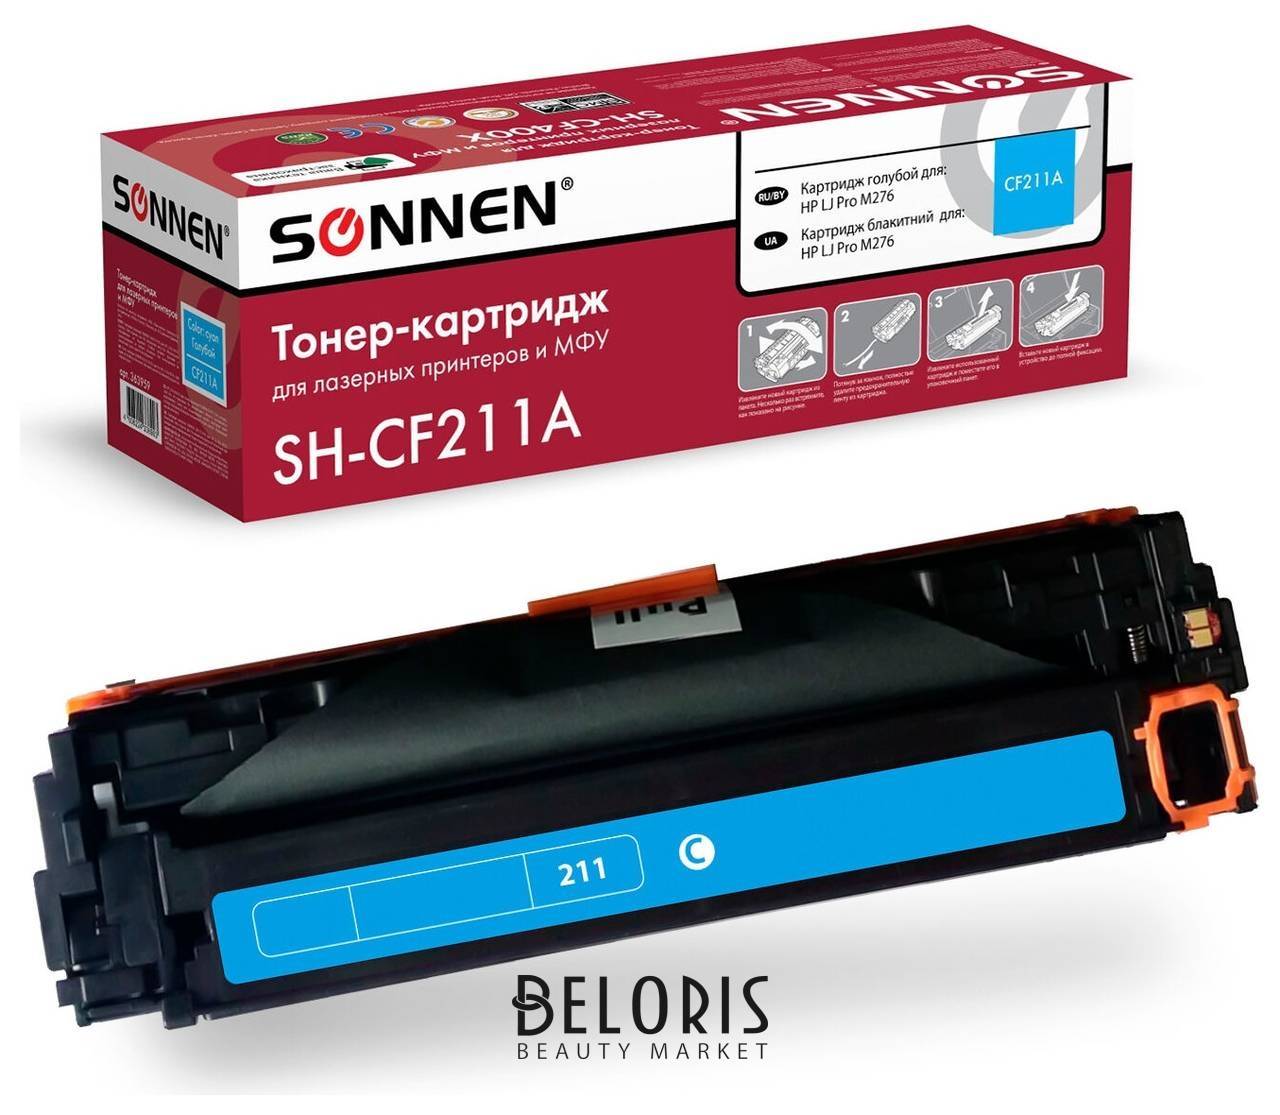 Картридж лазерный Sonnen (Sh-cf211a) для HP LJ Pro M276 высшее качество, голубой, 1800 страниц, 363959 Sonnen